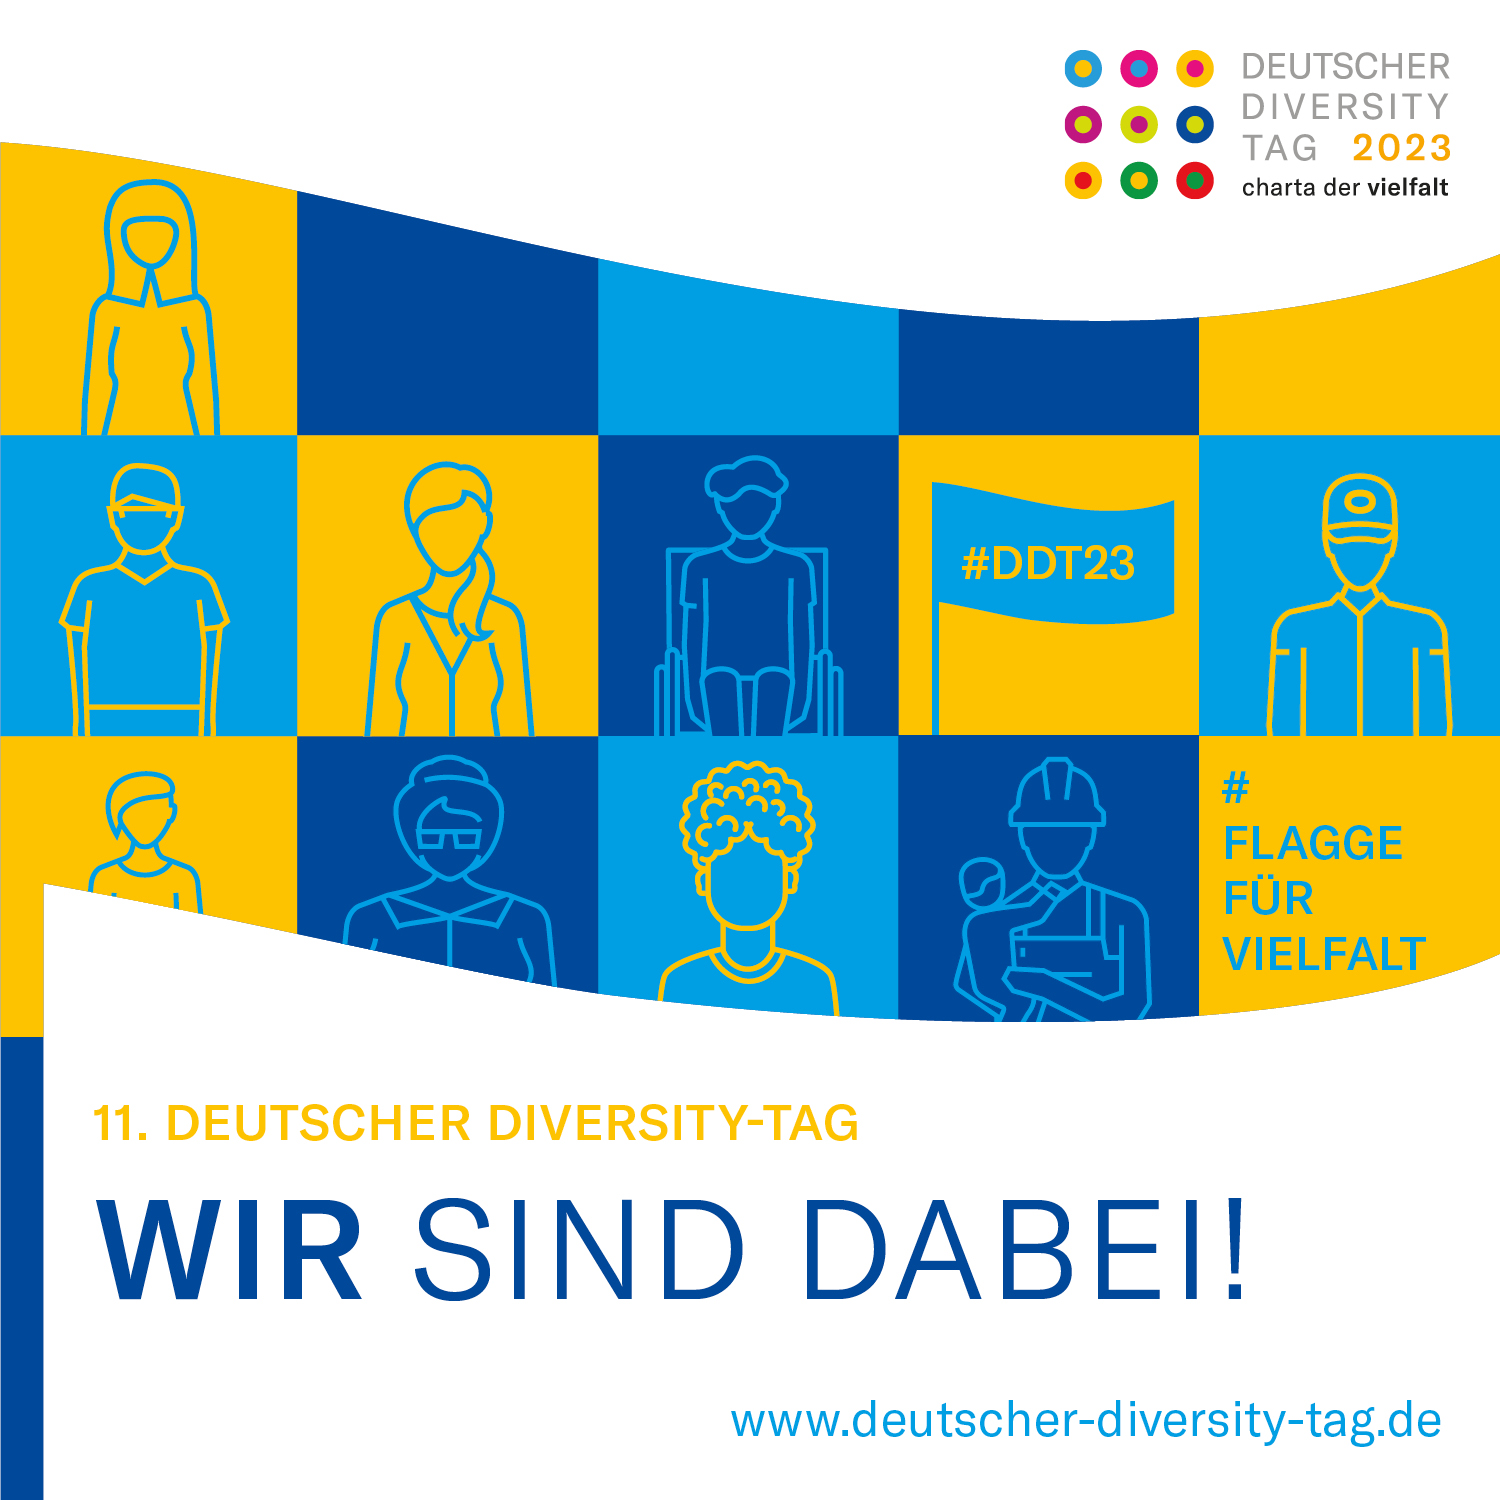 Deutscher Diversity-Tag 2023